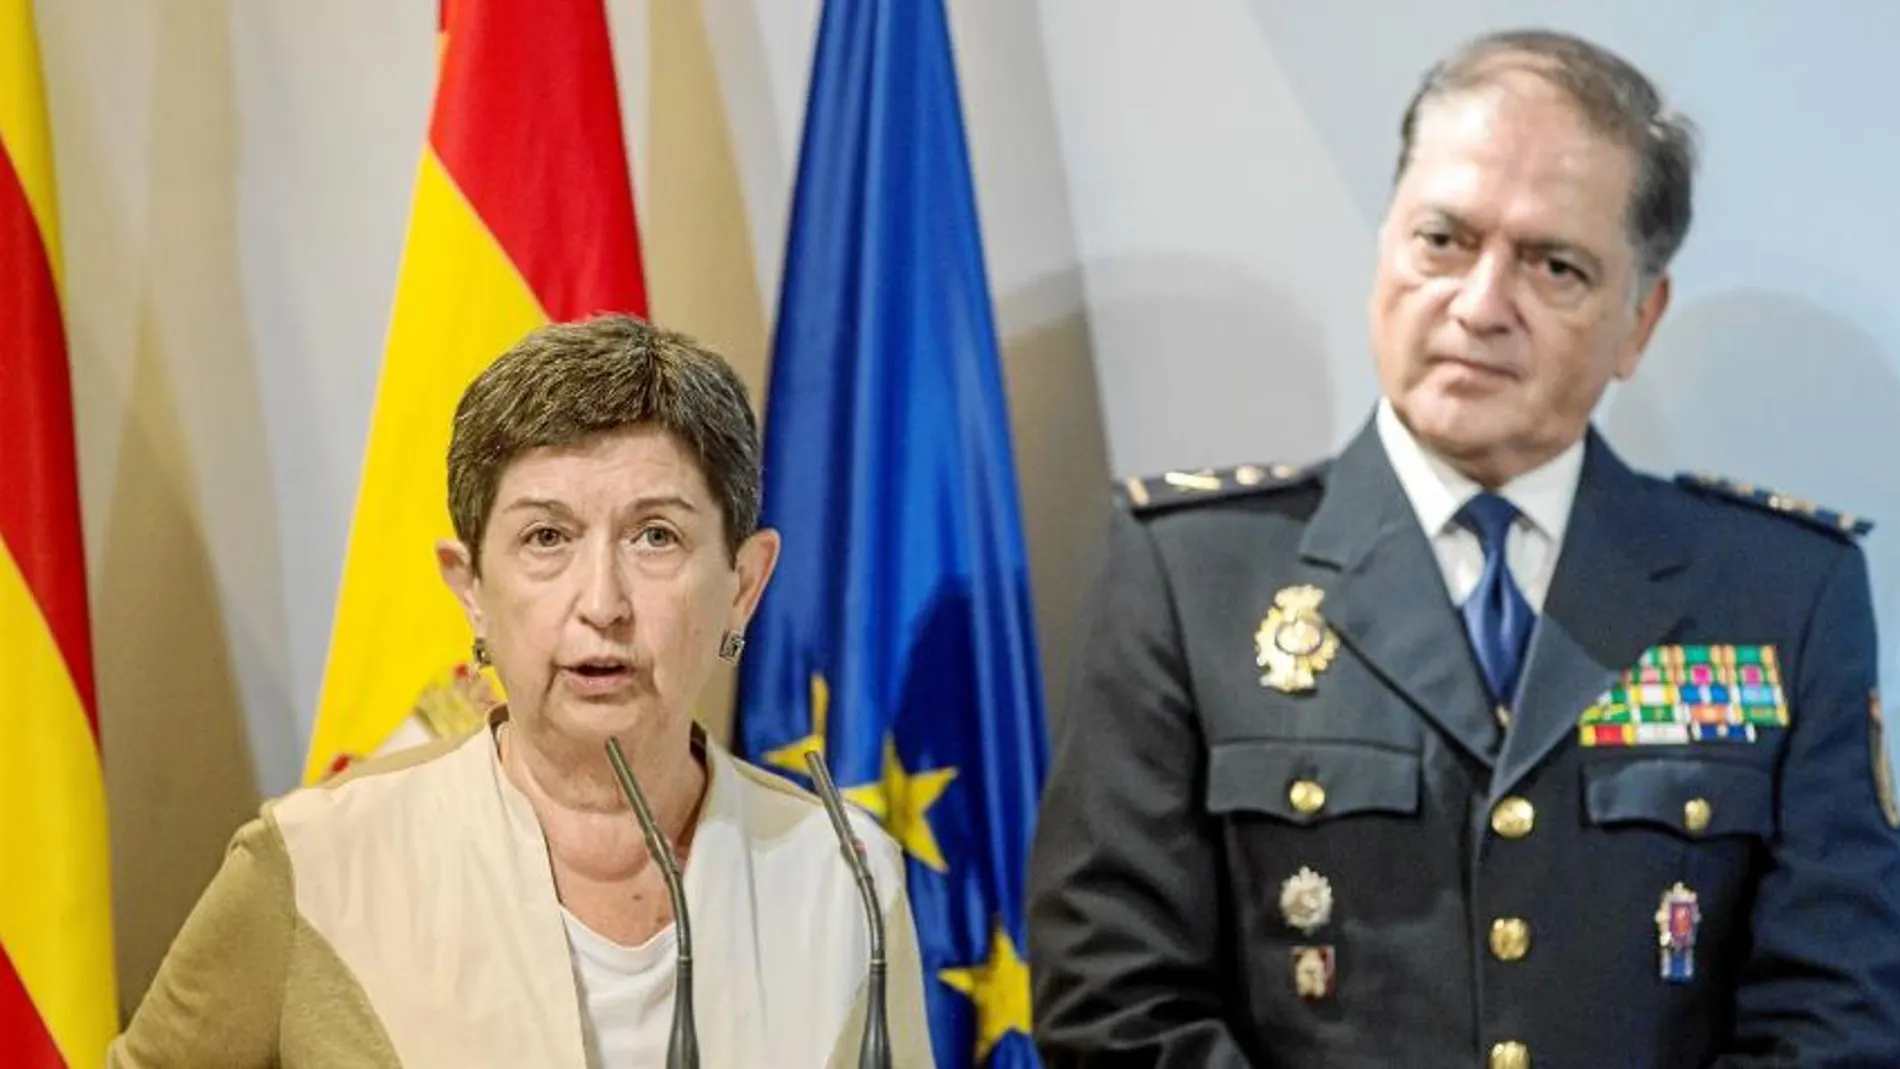 La delegada del Gobierno, Teresa Cunillera, con José Antonio Togores, hasta ahora Jefe Superior de la Policía Nacional en Cataluña